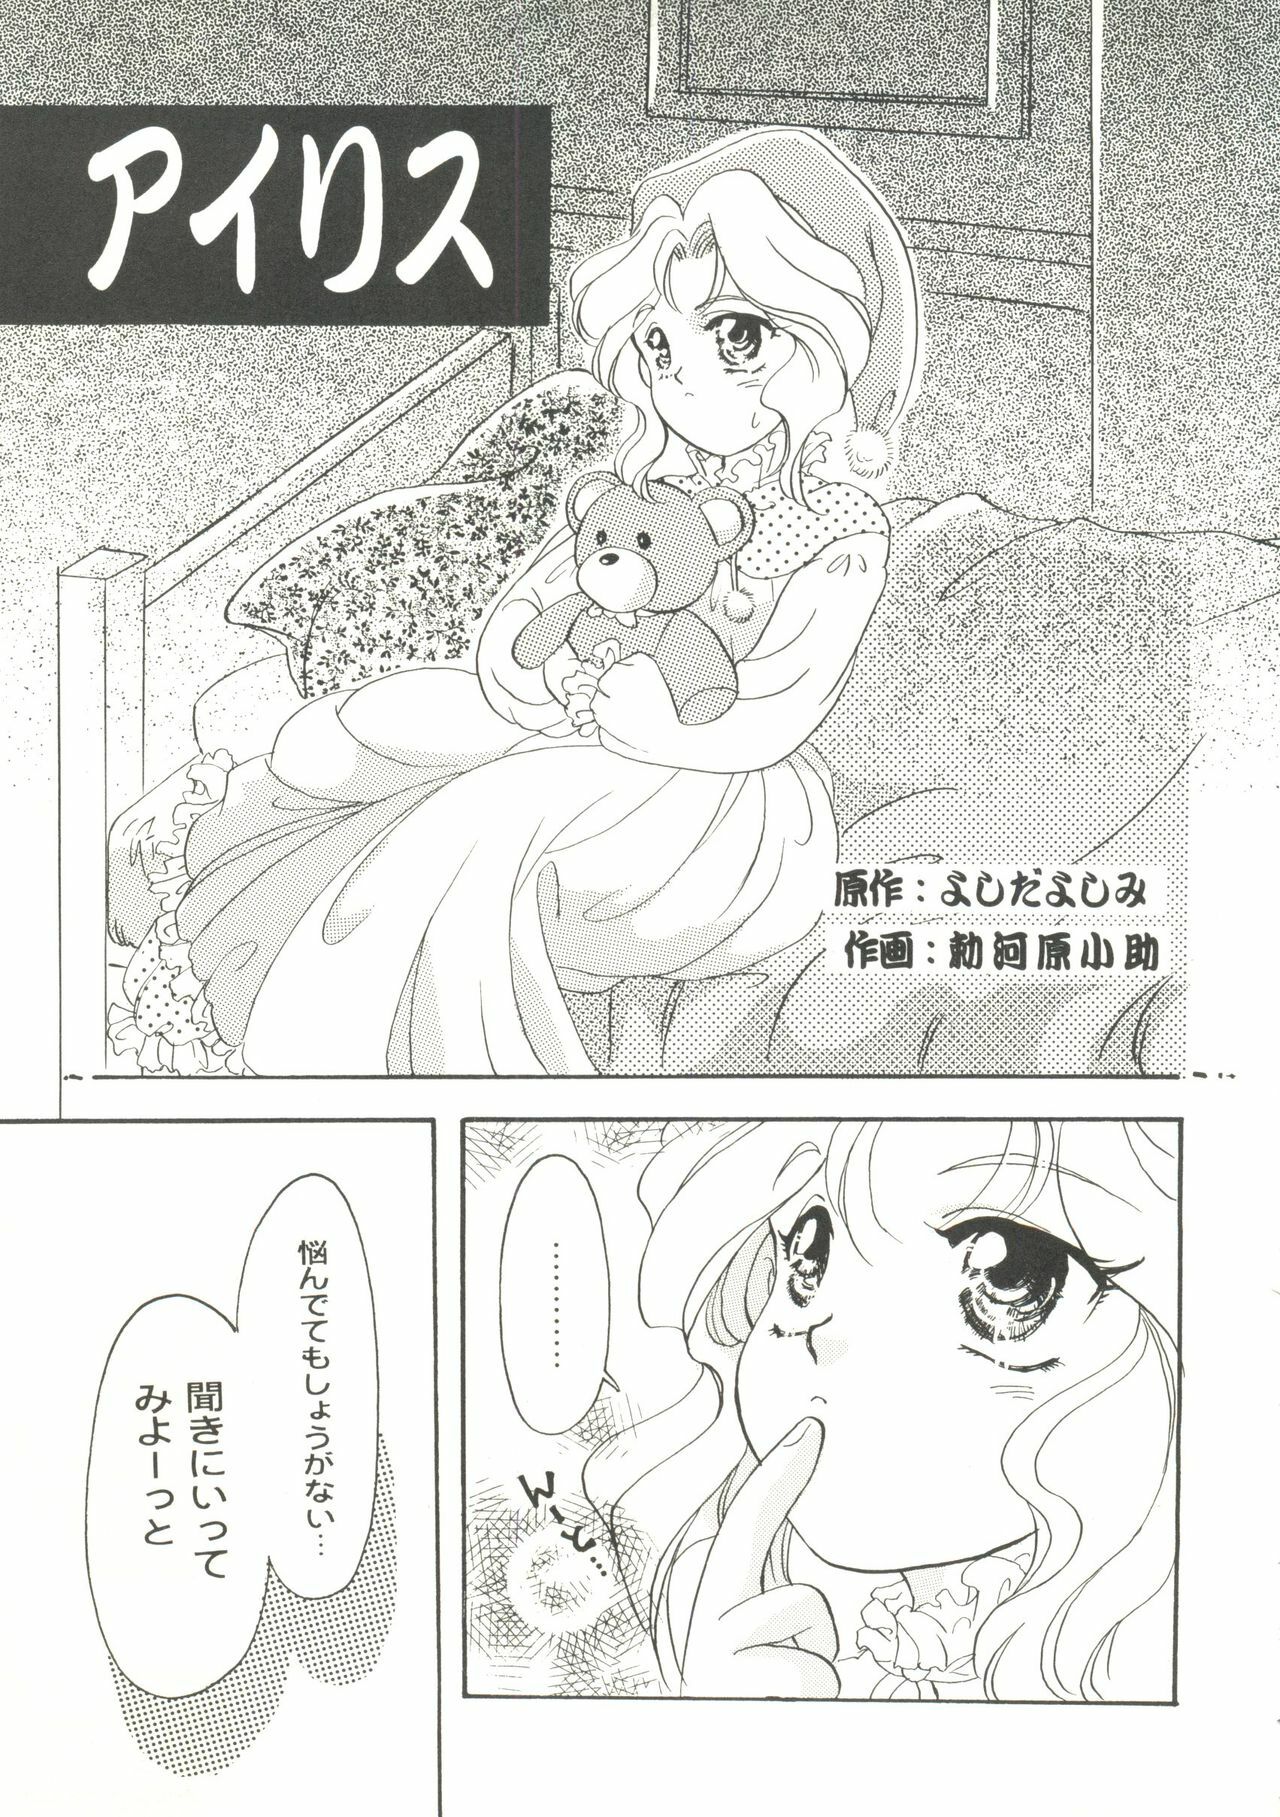 [Anthology] Game Miki 9 (Various) page 34 full